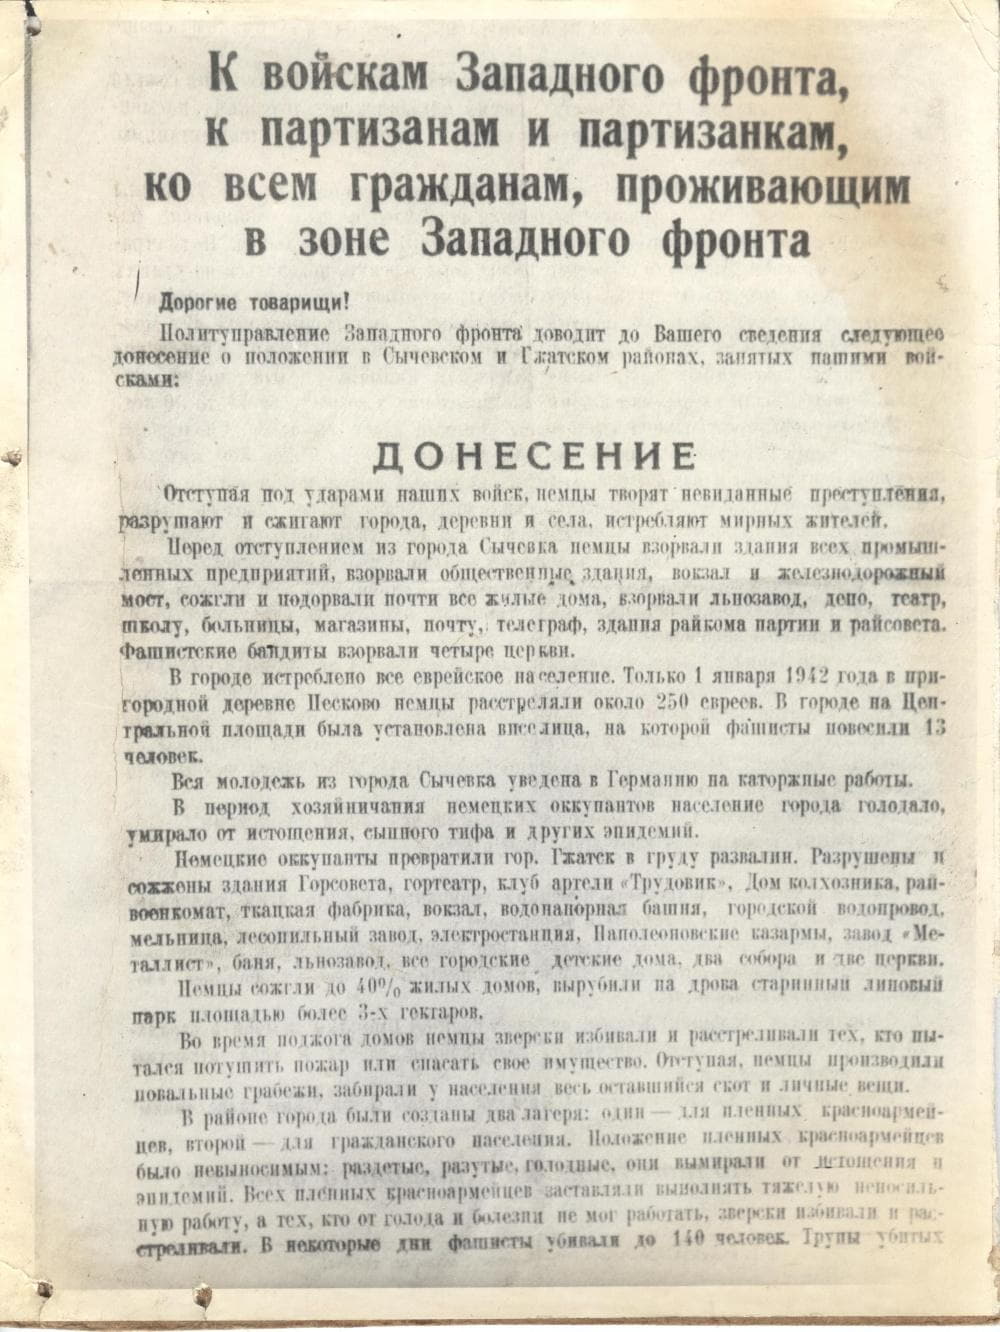 Обращение политуправления западного фронта к партизанам, 1943